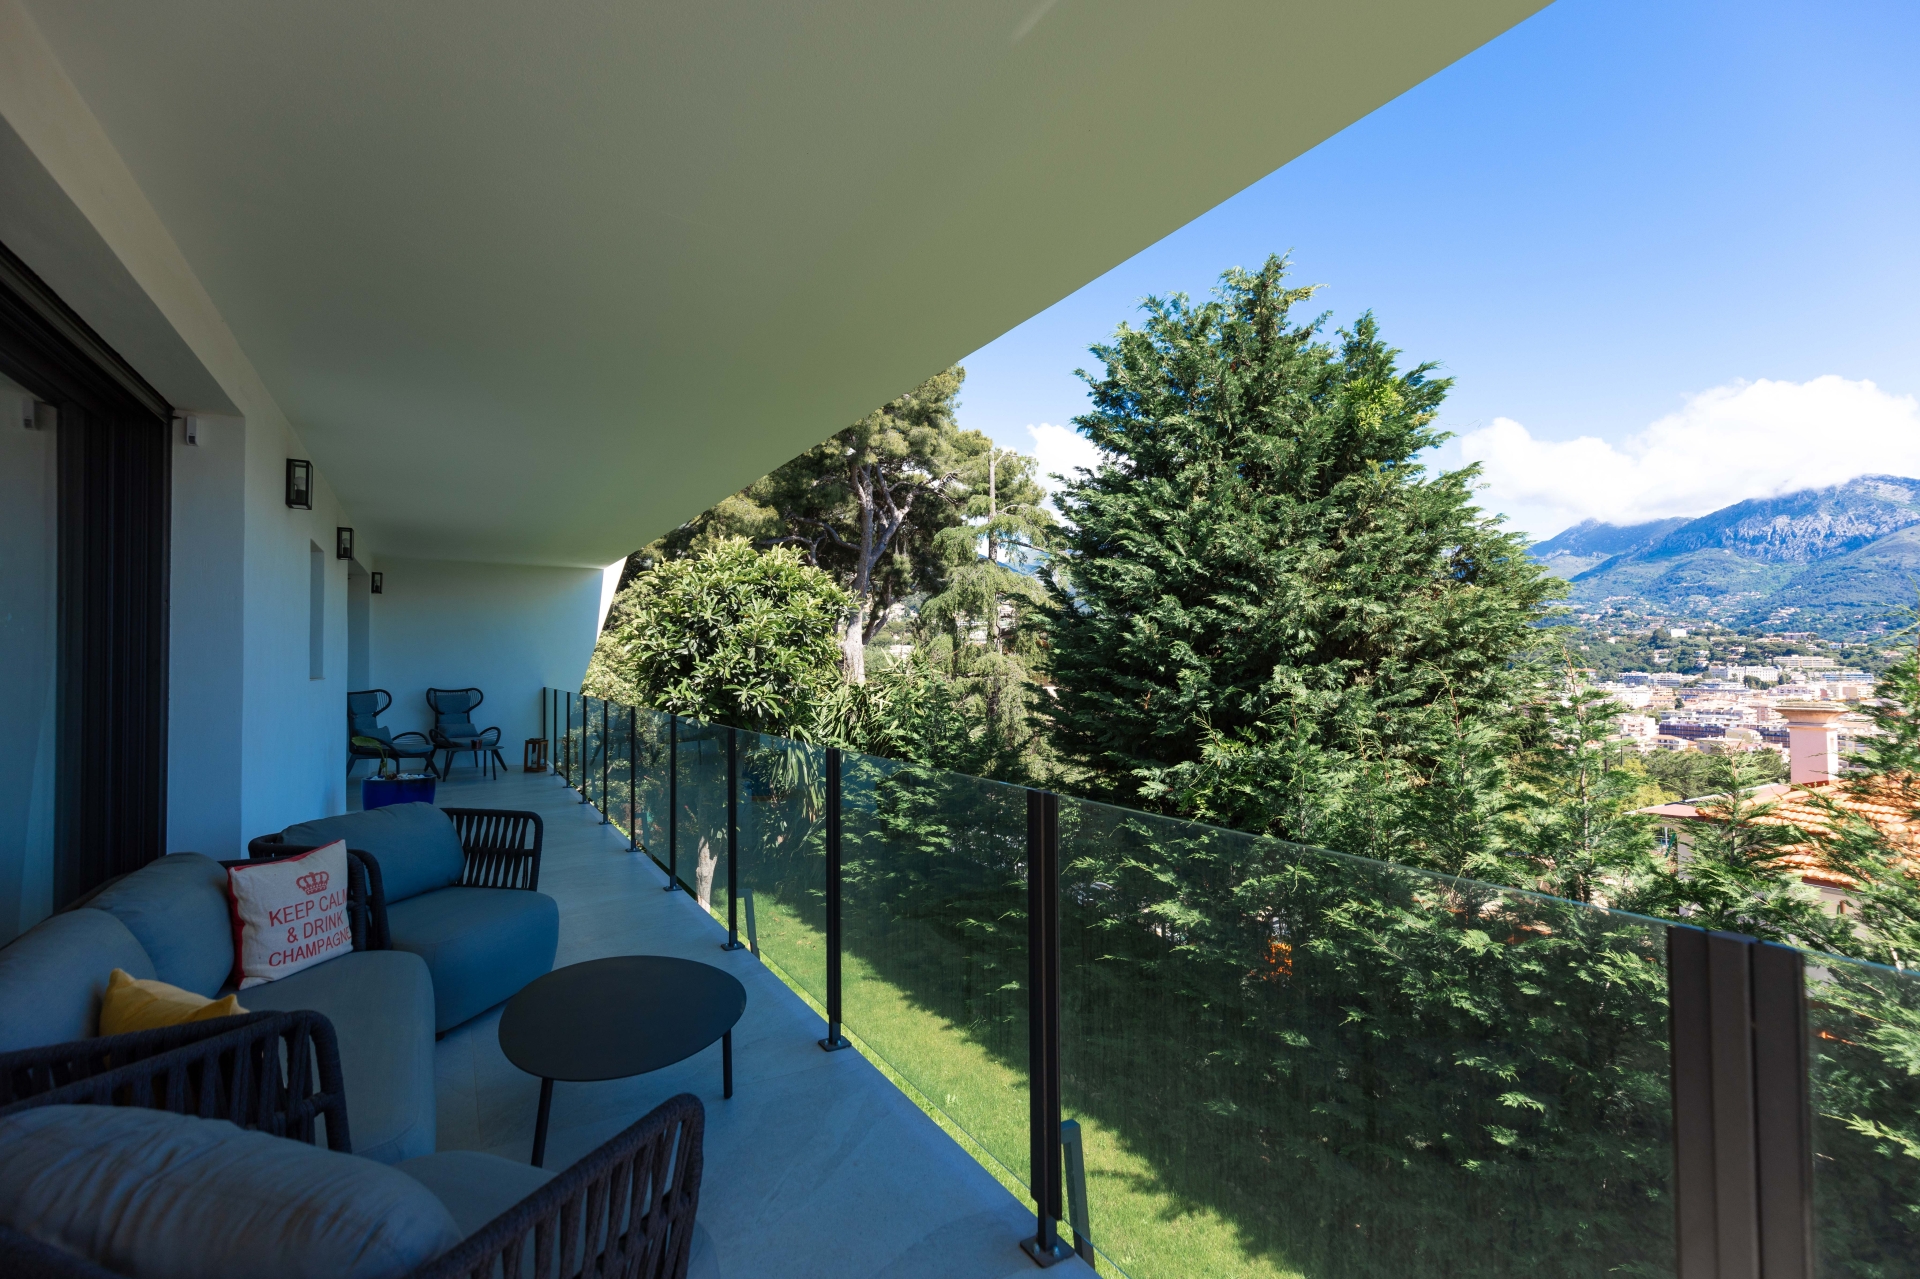 Dotta Villa a vendre - VILLA STECYA - Roquebrune-Cap-Martin - Roquebrune-Cap-Martin - img074a5018